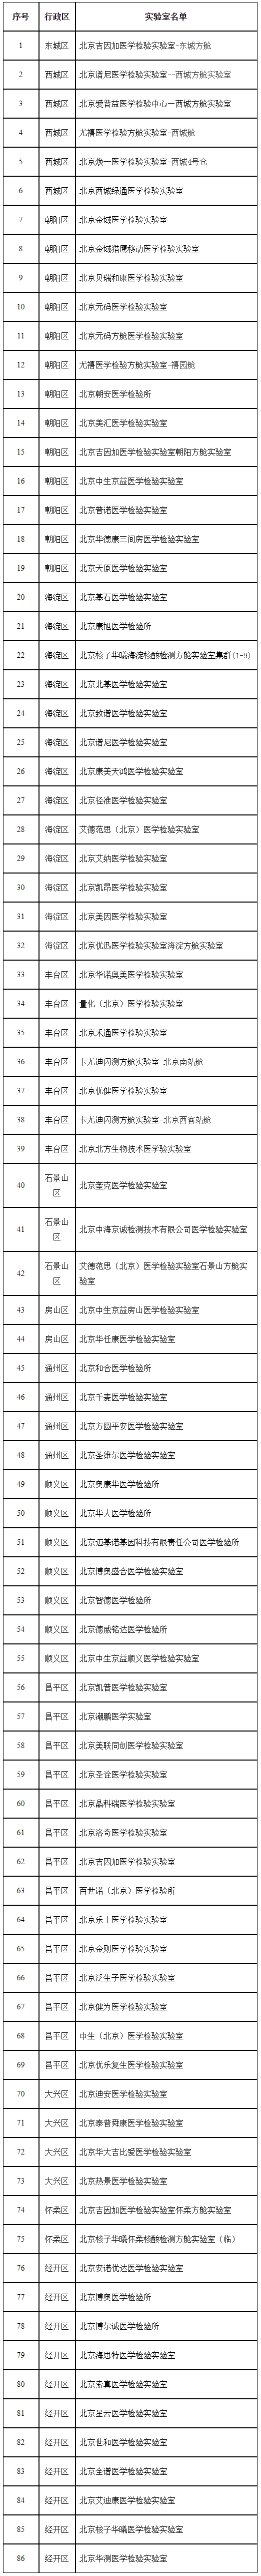 北京发布首批86家新冠病毒核酸检测医学检验实验室审核合格机构名单